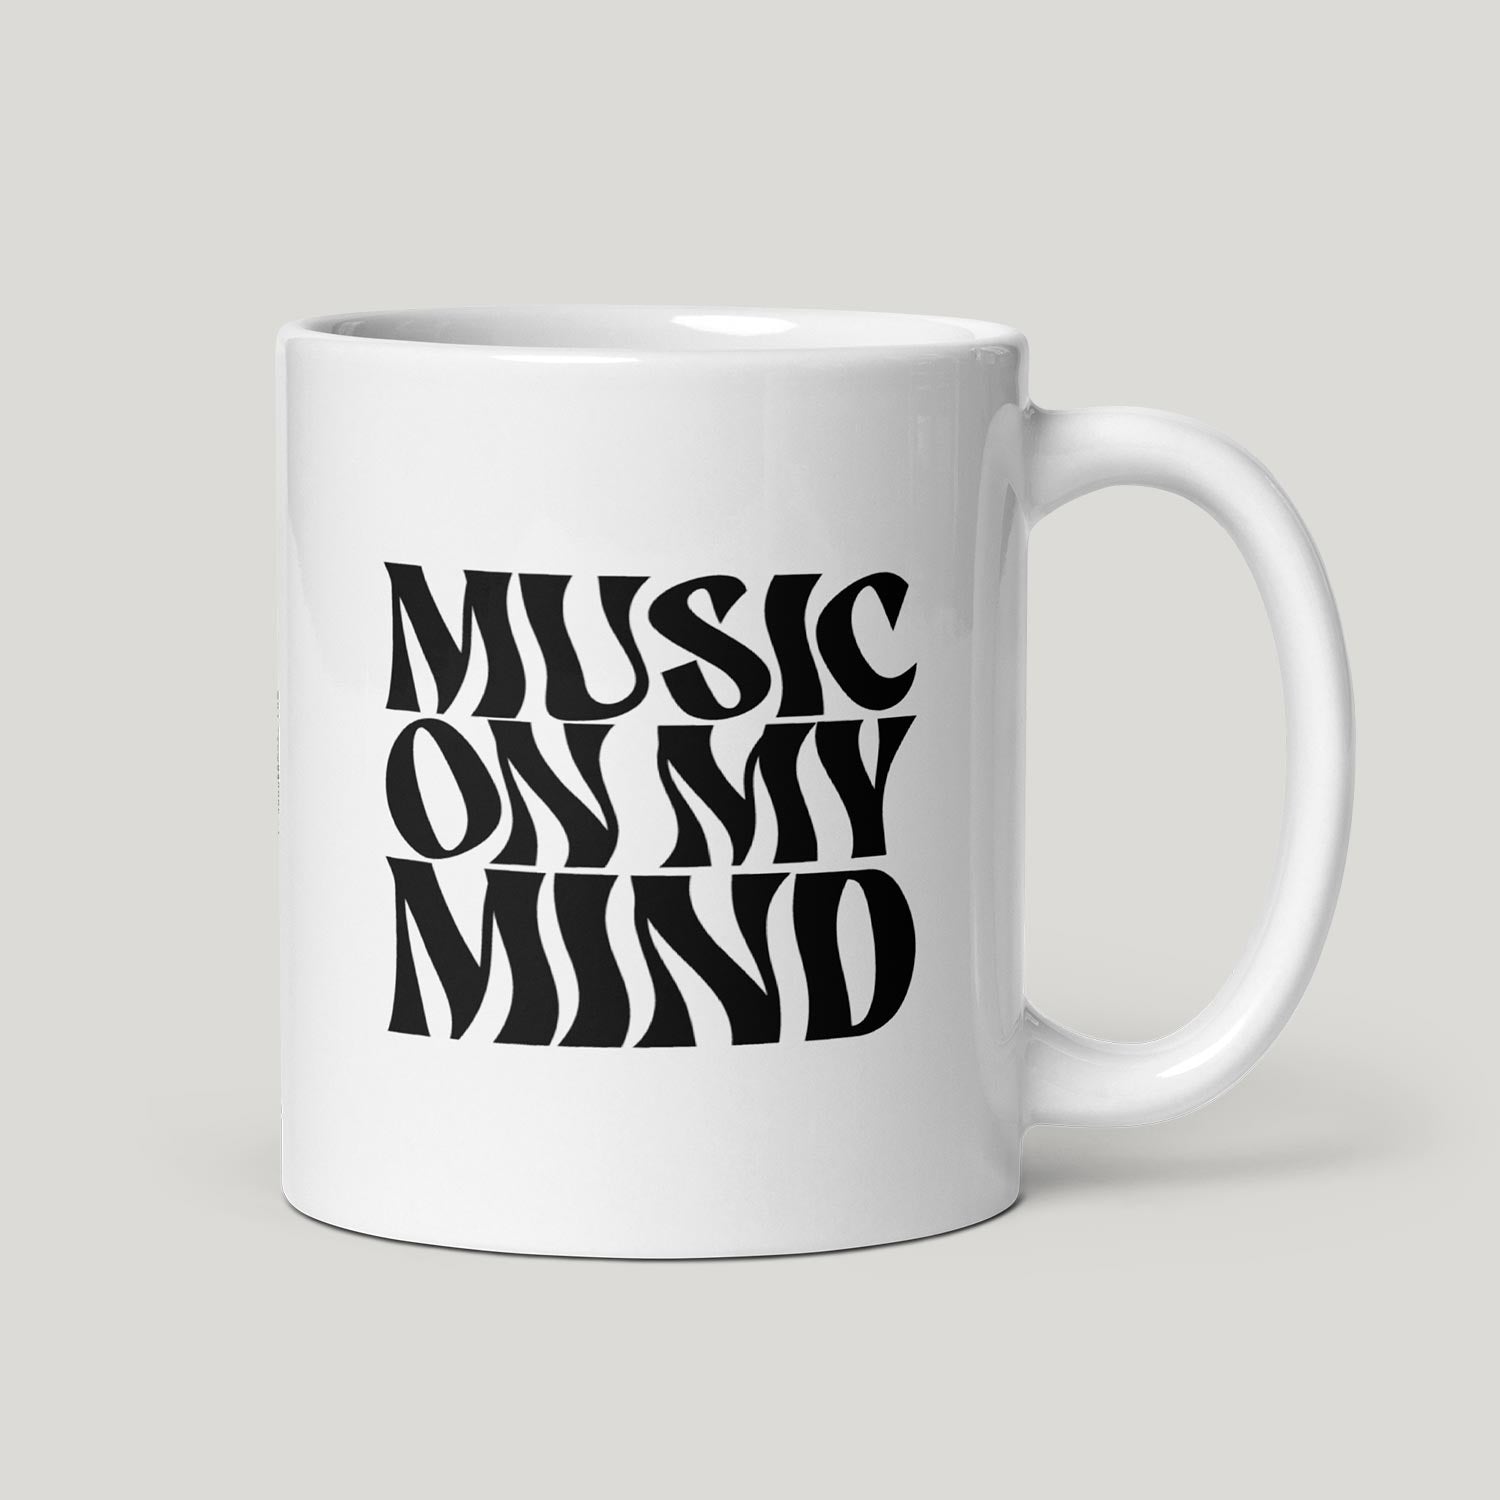 Music On My Mind Mug